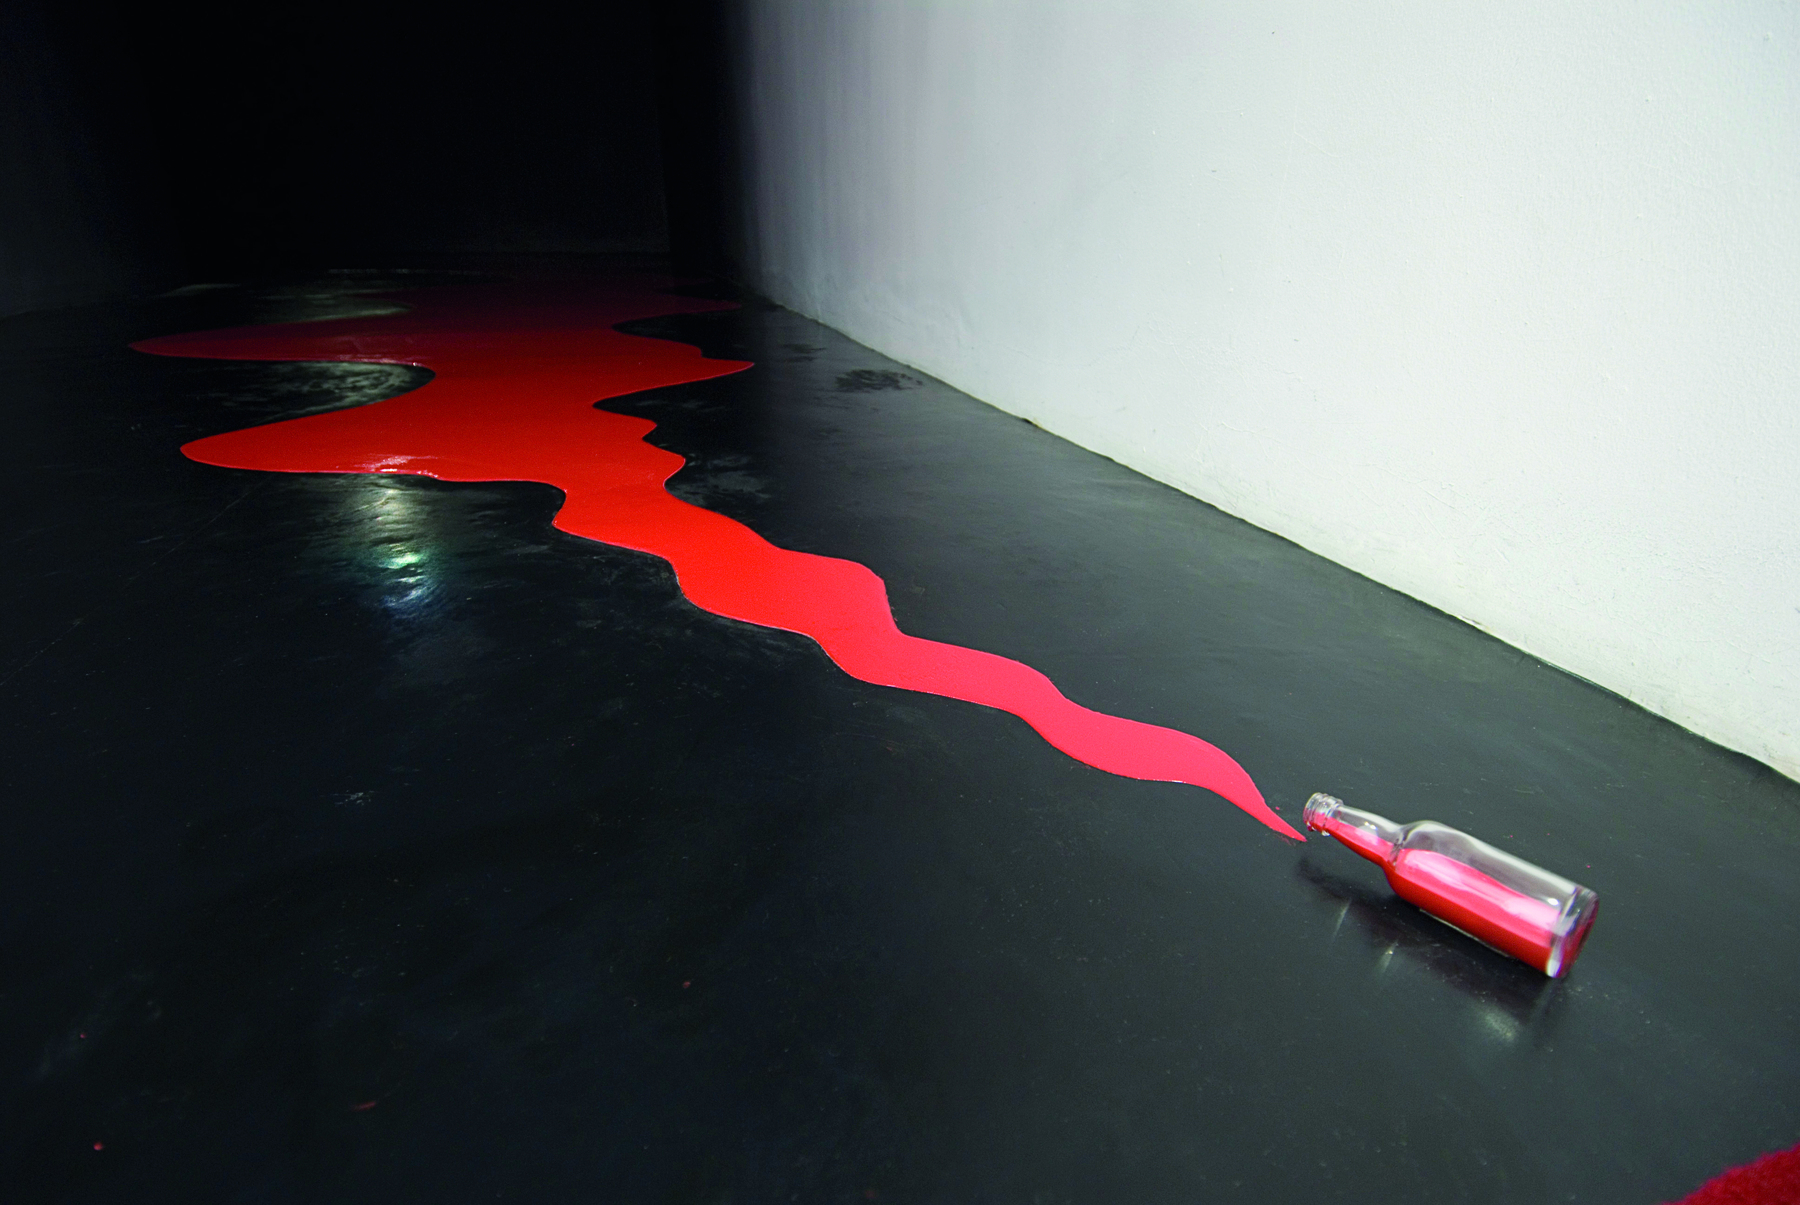 Fotografia. Instalação que apresenta uma garrafa caída que deixa escorrer tinta vermelha em um grande rastro sobre o chão preto.